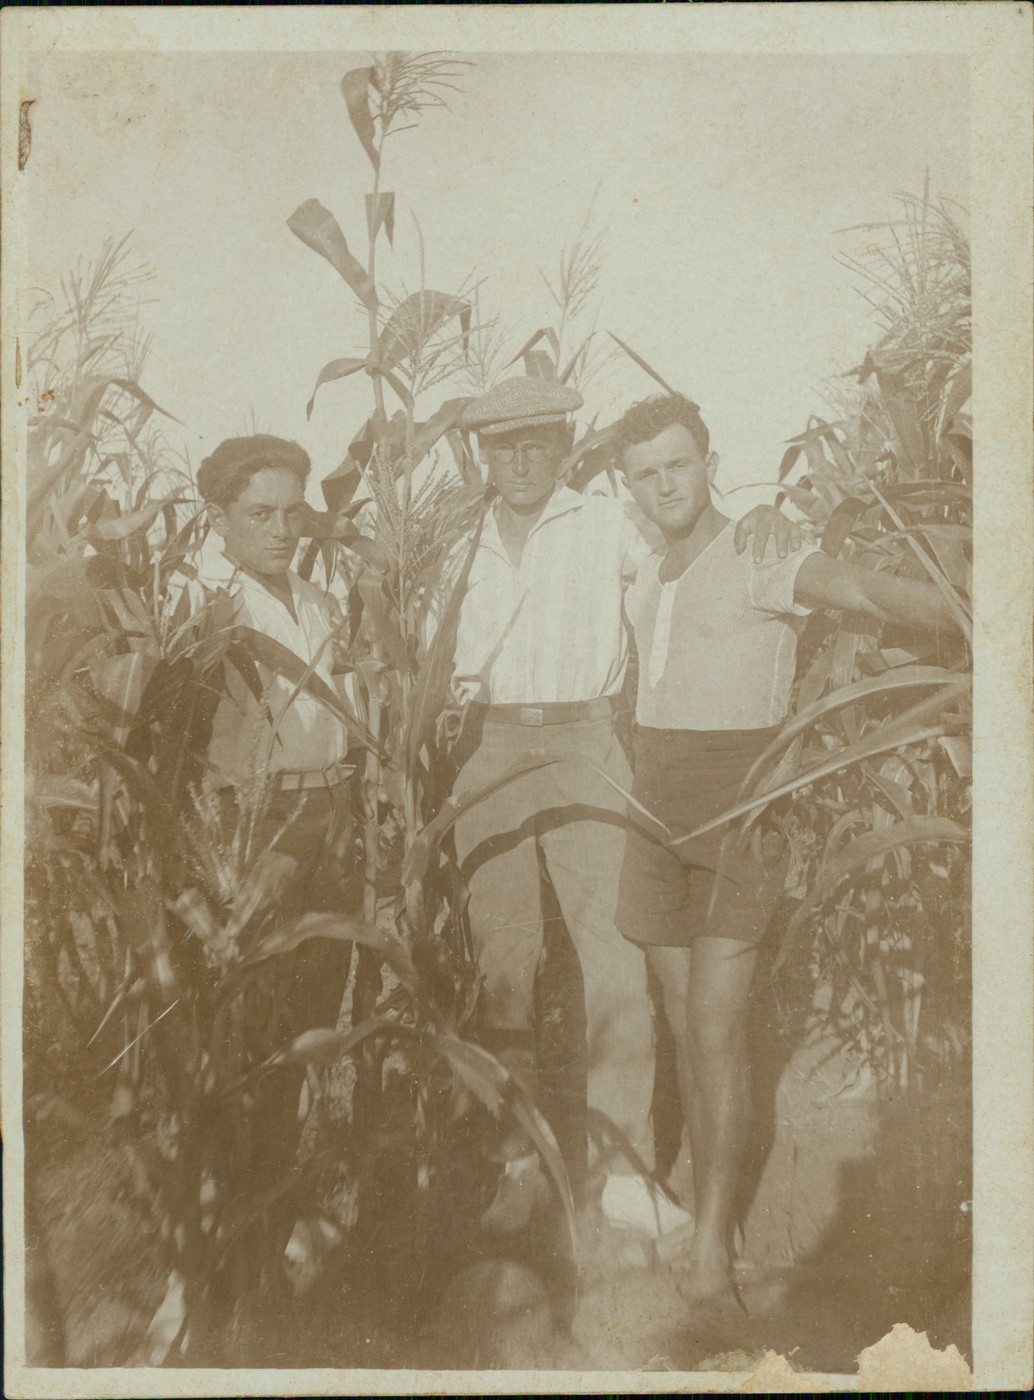 דוד הירשהורן (במרכז) עם חברים בשדה התירס ברעננה, שנות ה-30